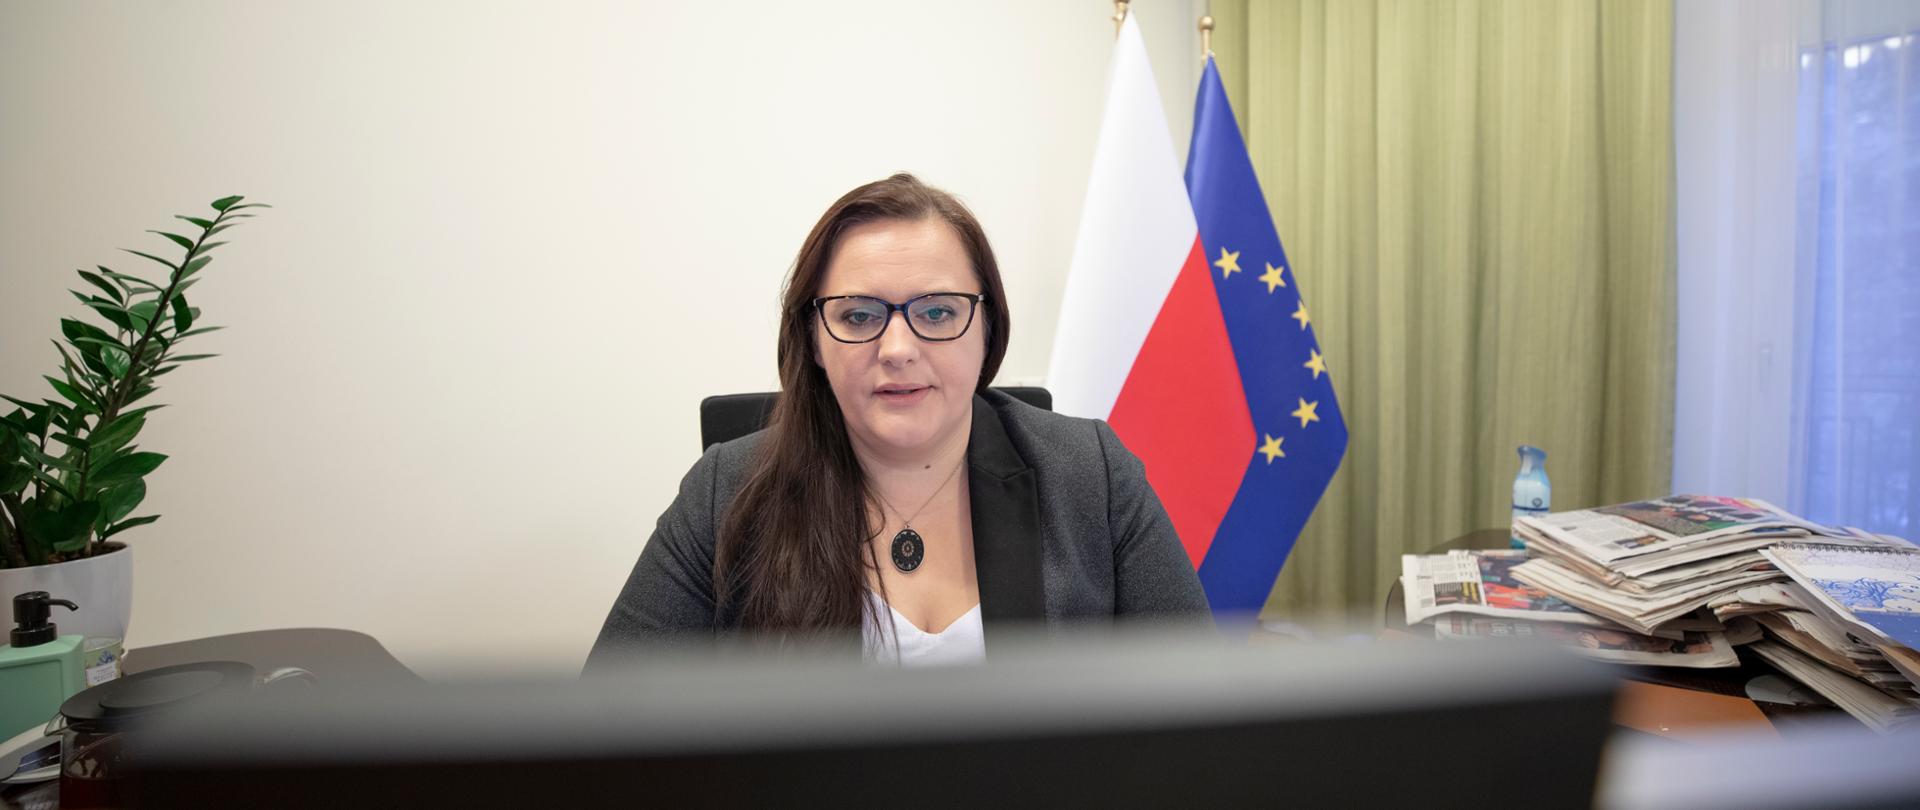 Wiceminister Małgorzata Jarosińska-Jedynak siedzi przed monitorem. Za nią z prawej strony dwie flagi Polski i UE. Z lewej kwiatek w doniczce.